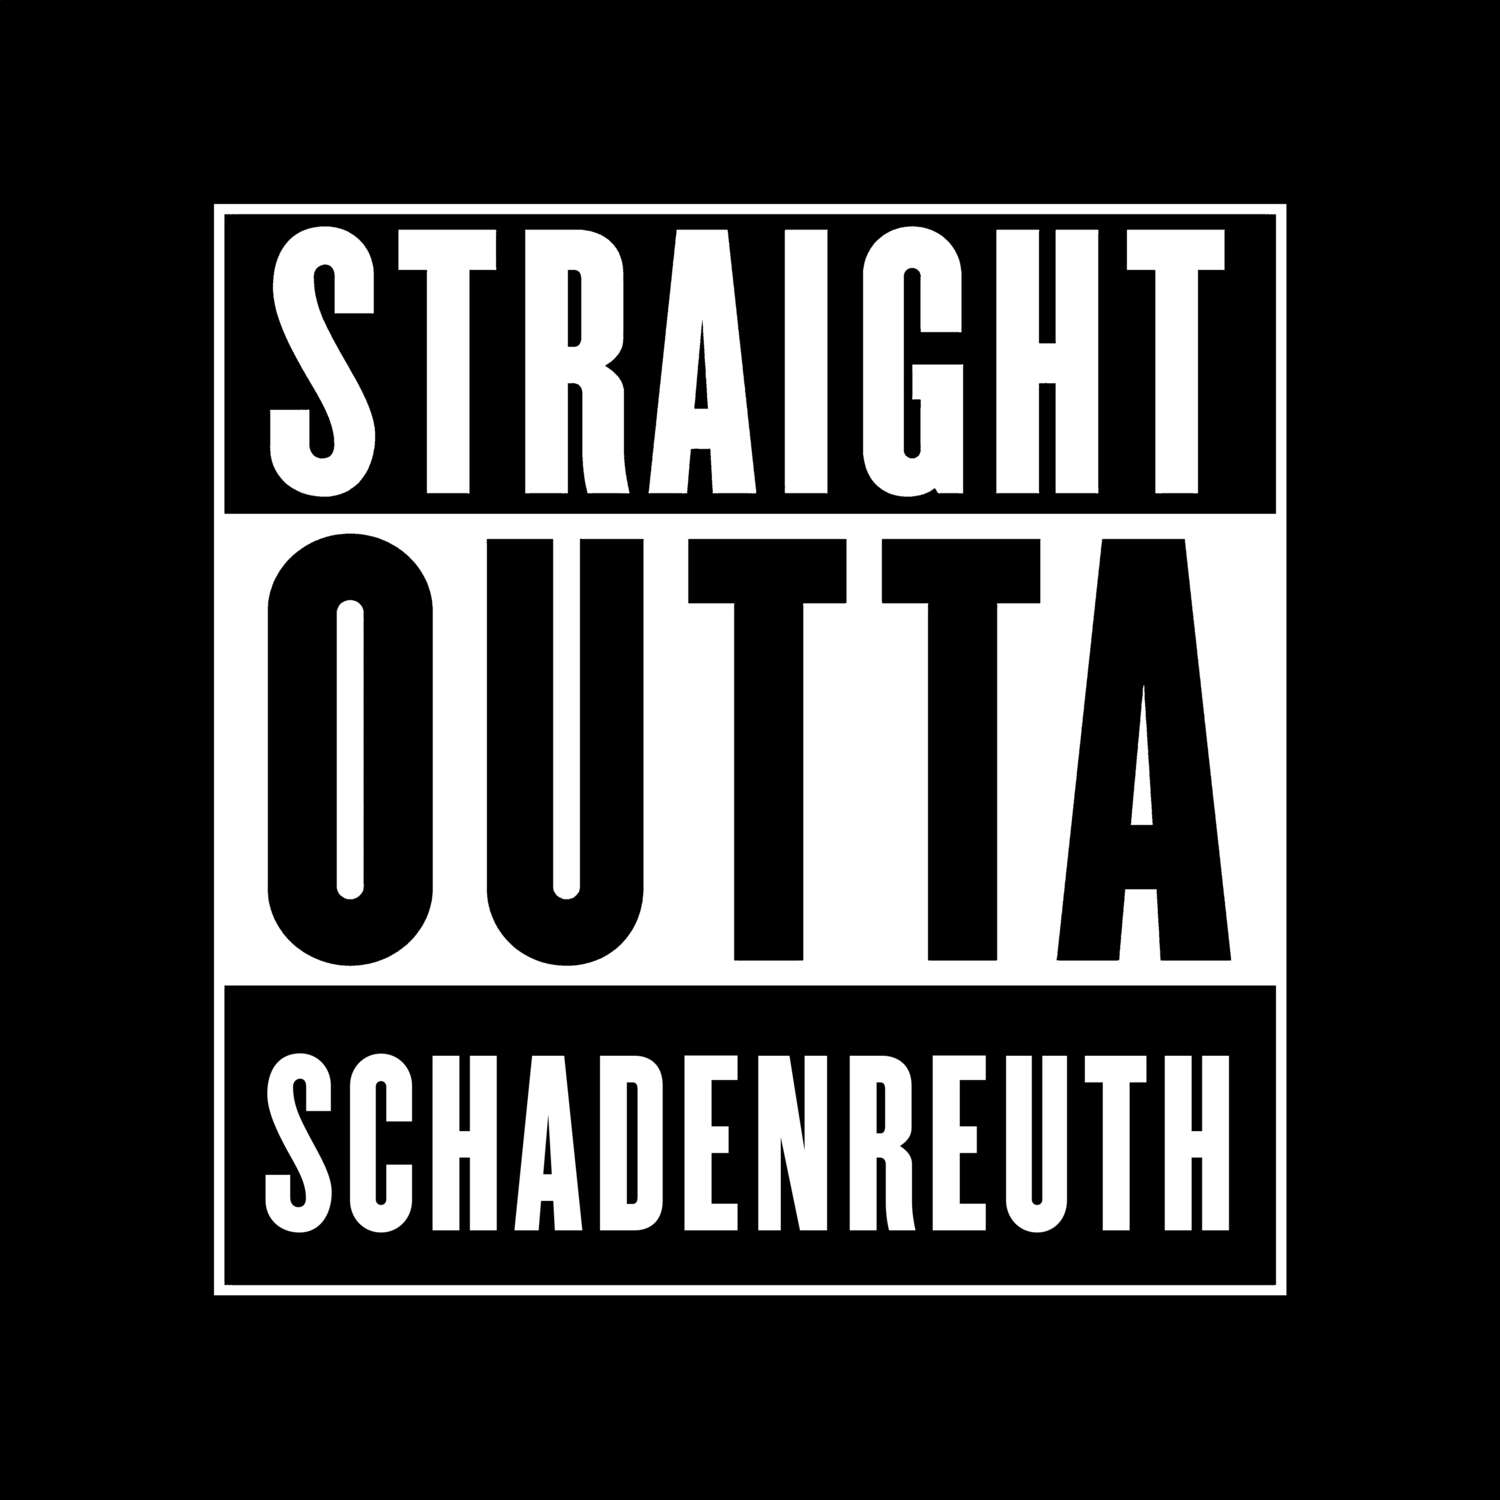 Schadenreuth T-Shirt »Straight Outta«